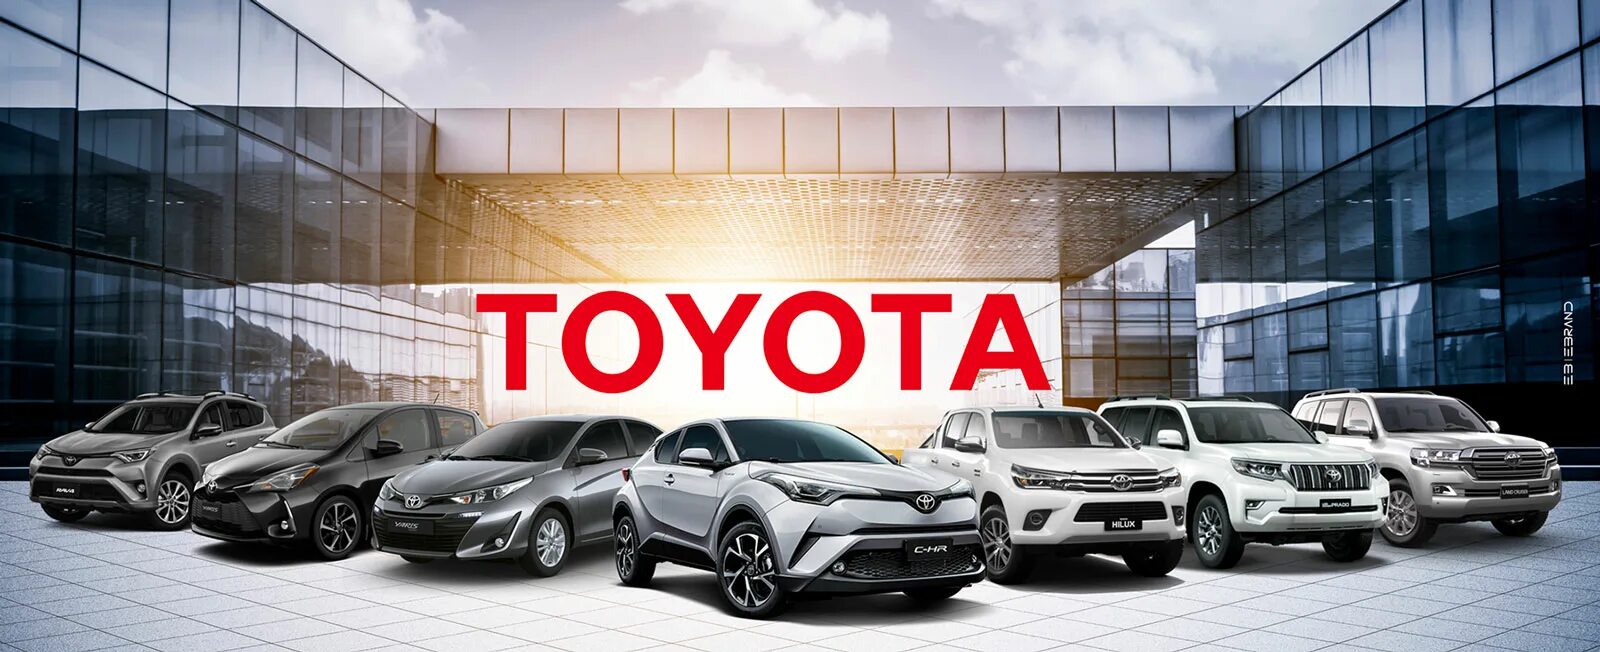 Правда ли что тойота возвращается. Toyota компания. Тойота рынок. Продукция компании Тойота. Toyota концерн.